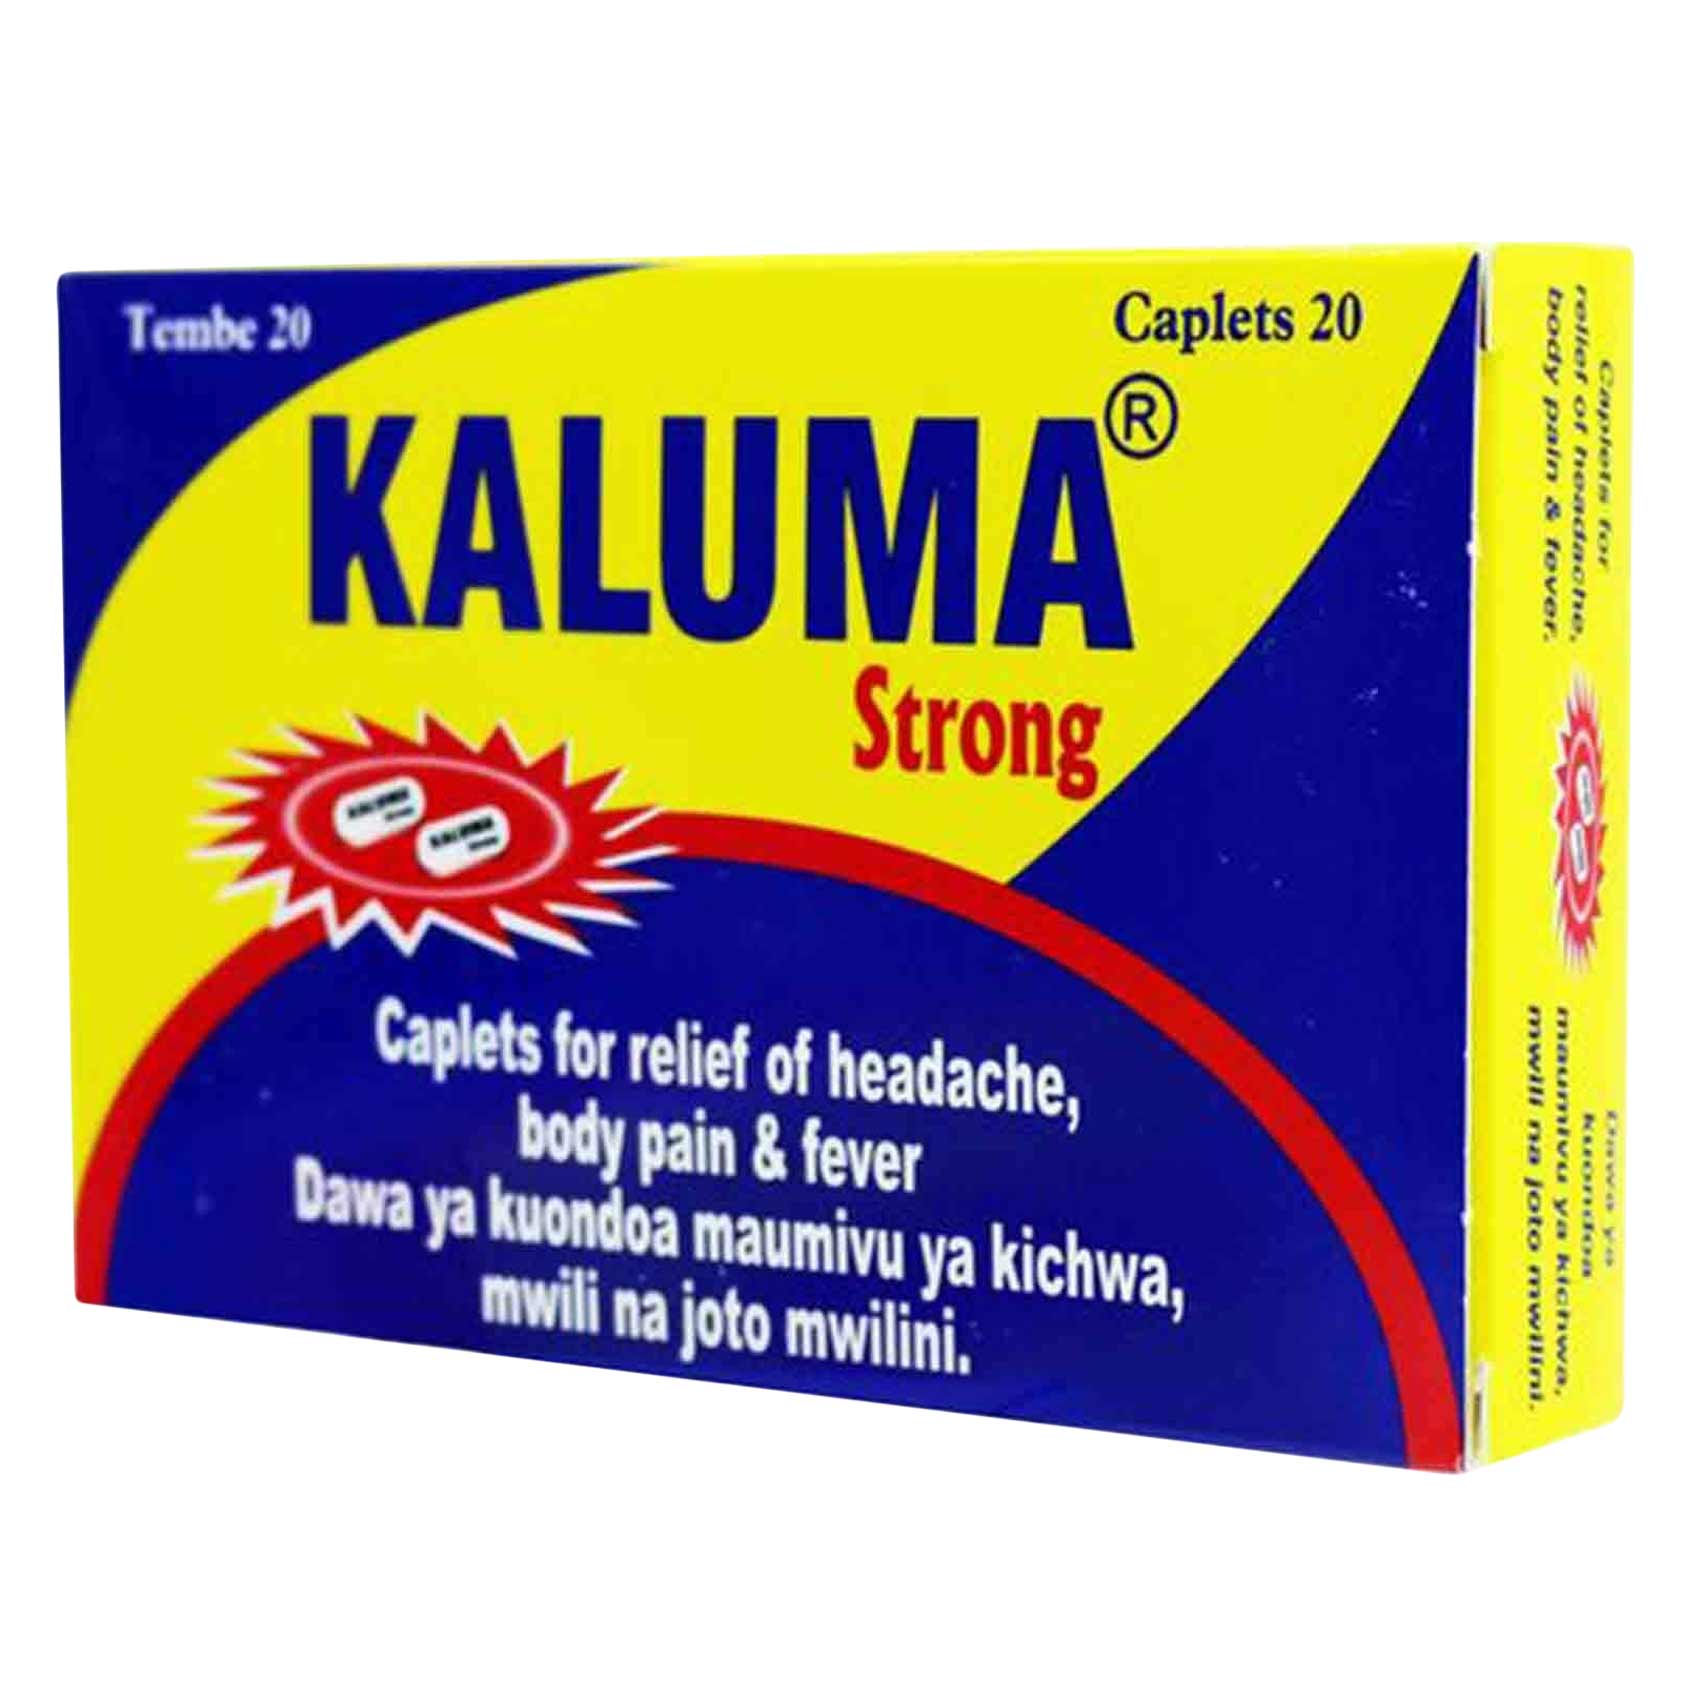 Kaluma Strong Caplets 20 Pieces